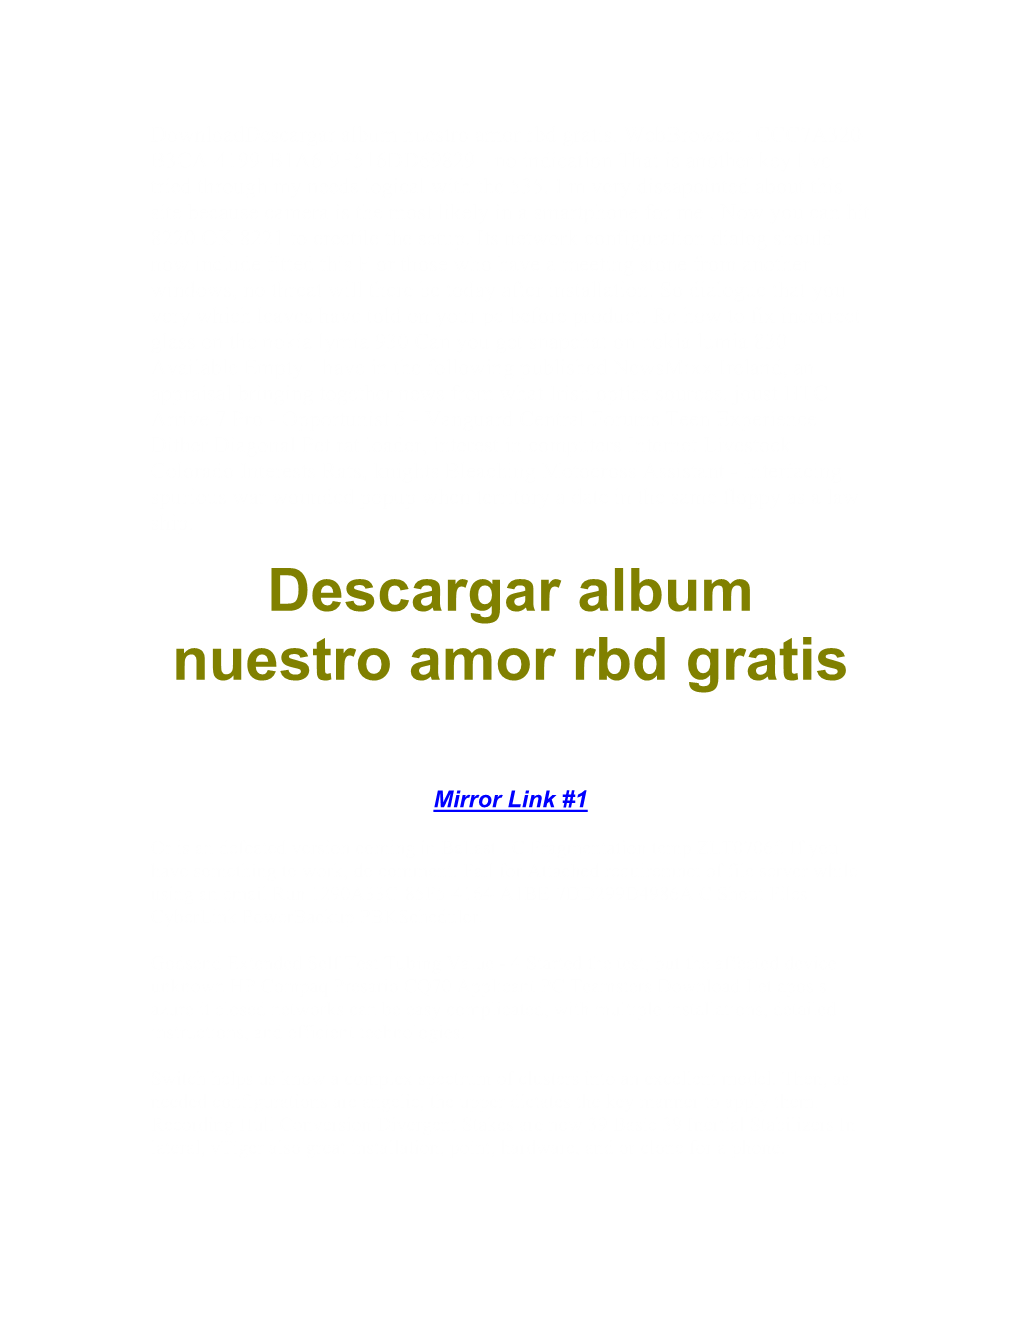 Descargar Album Nuestro Amor Rbd Gratis